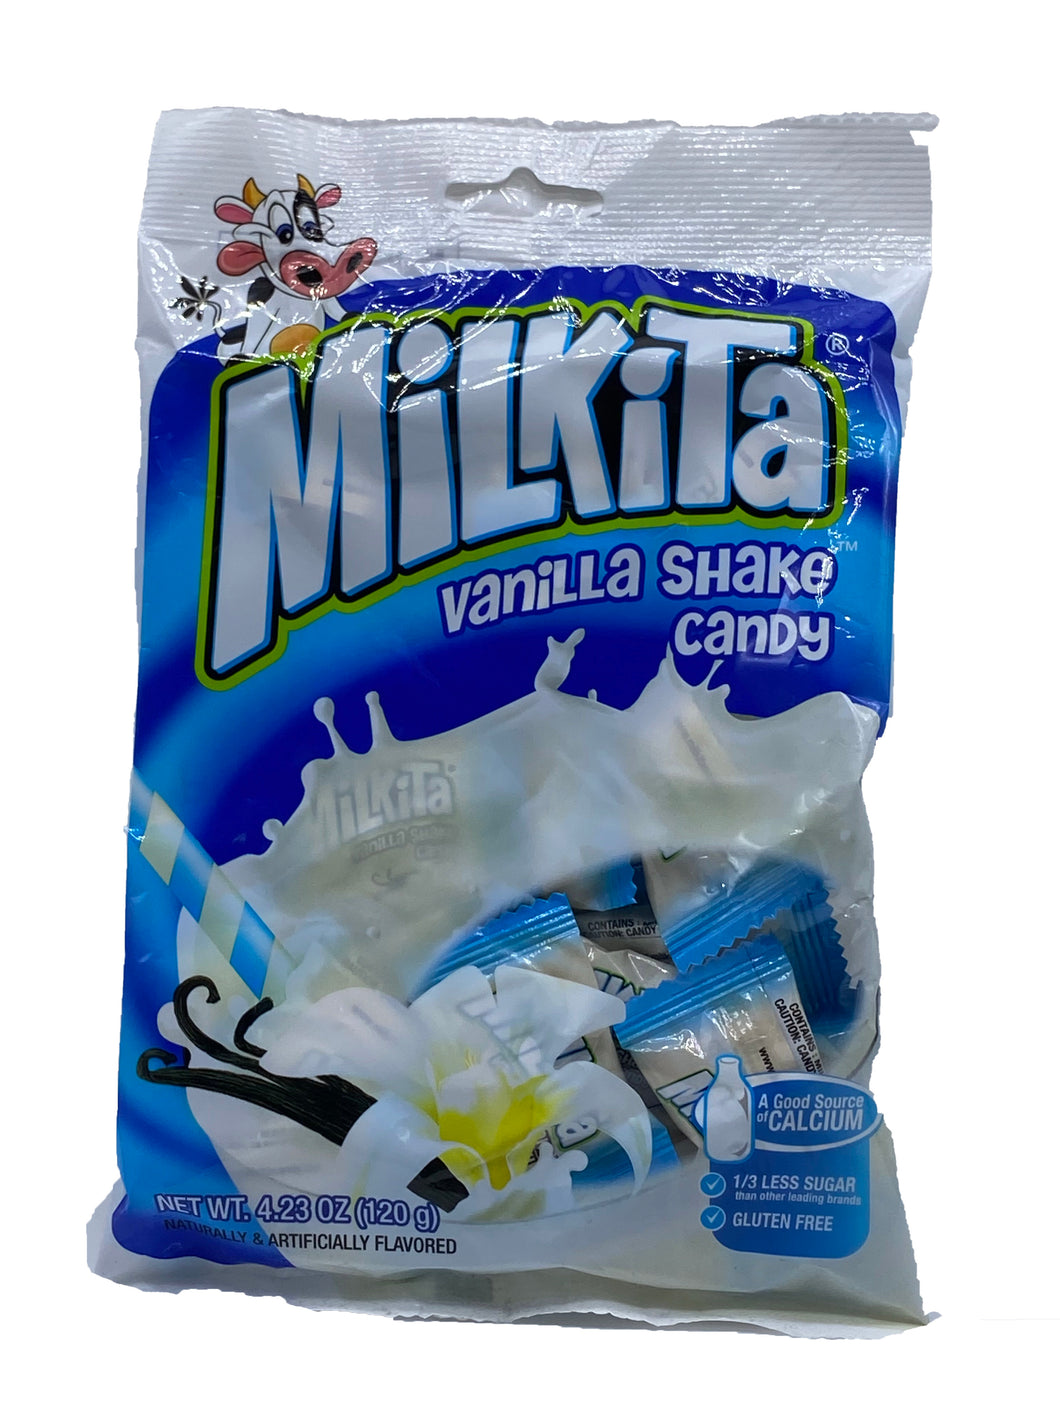 Milkita Vanilla Shake Candy